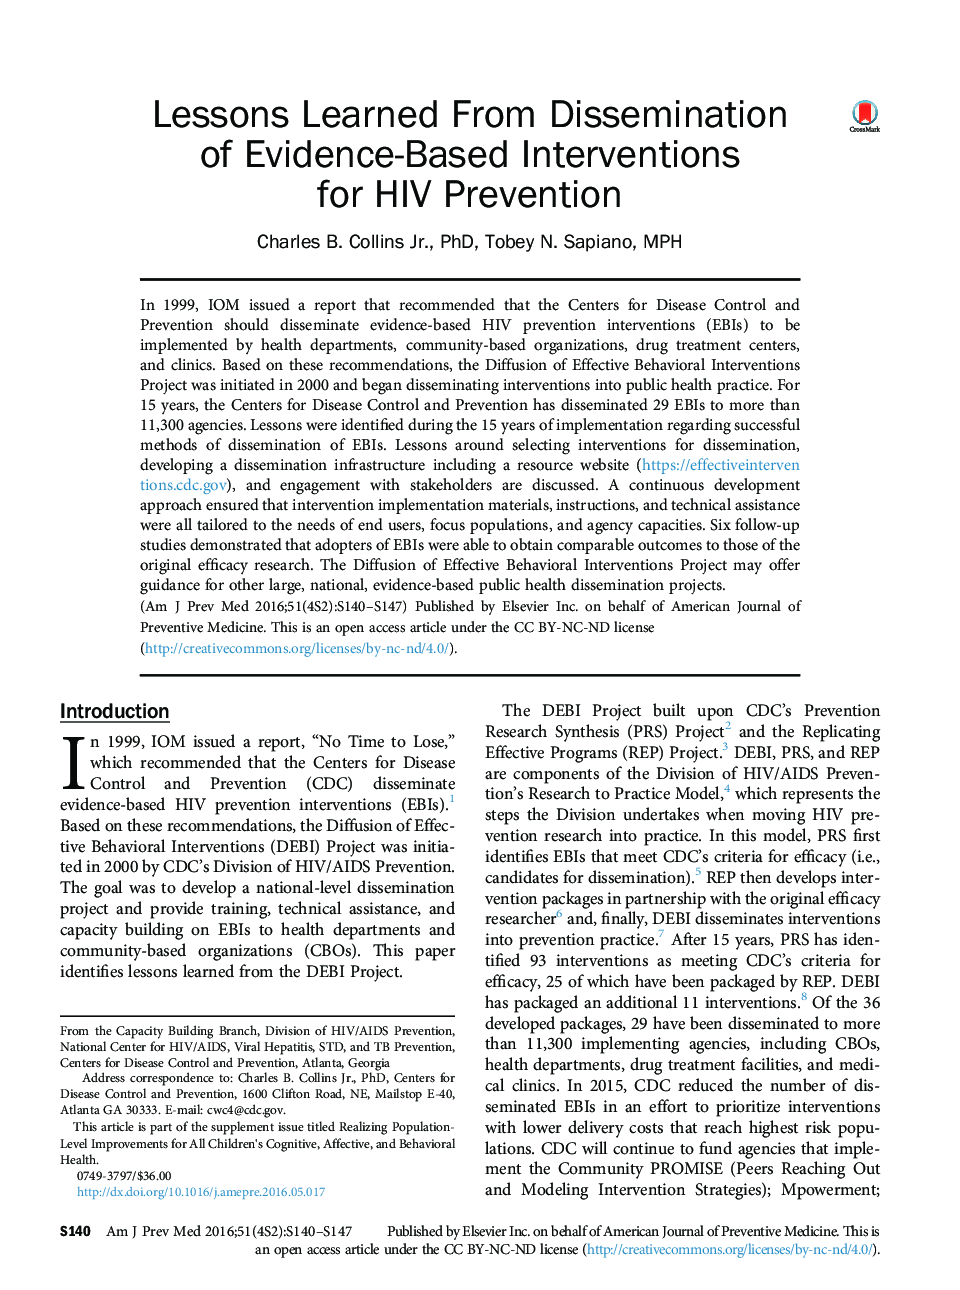 درسهایی از فرا رسیدن مداخلات مبتنی بر شواهد برای پیشگیری از اچ آی وی 